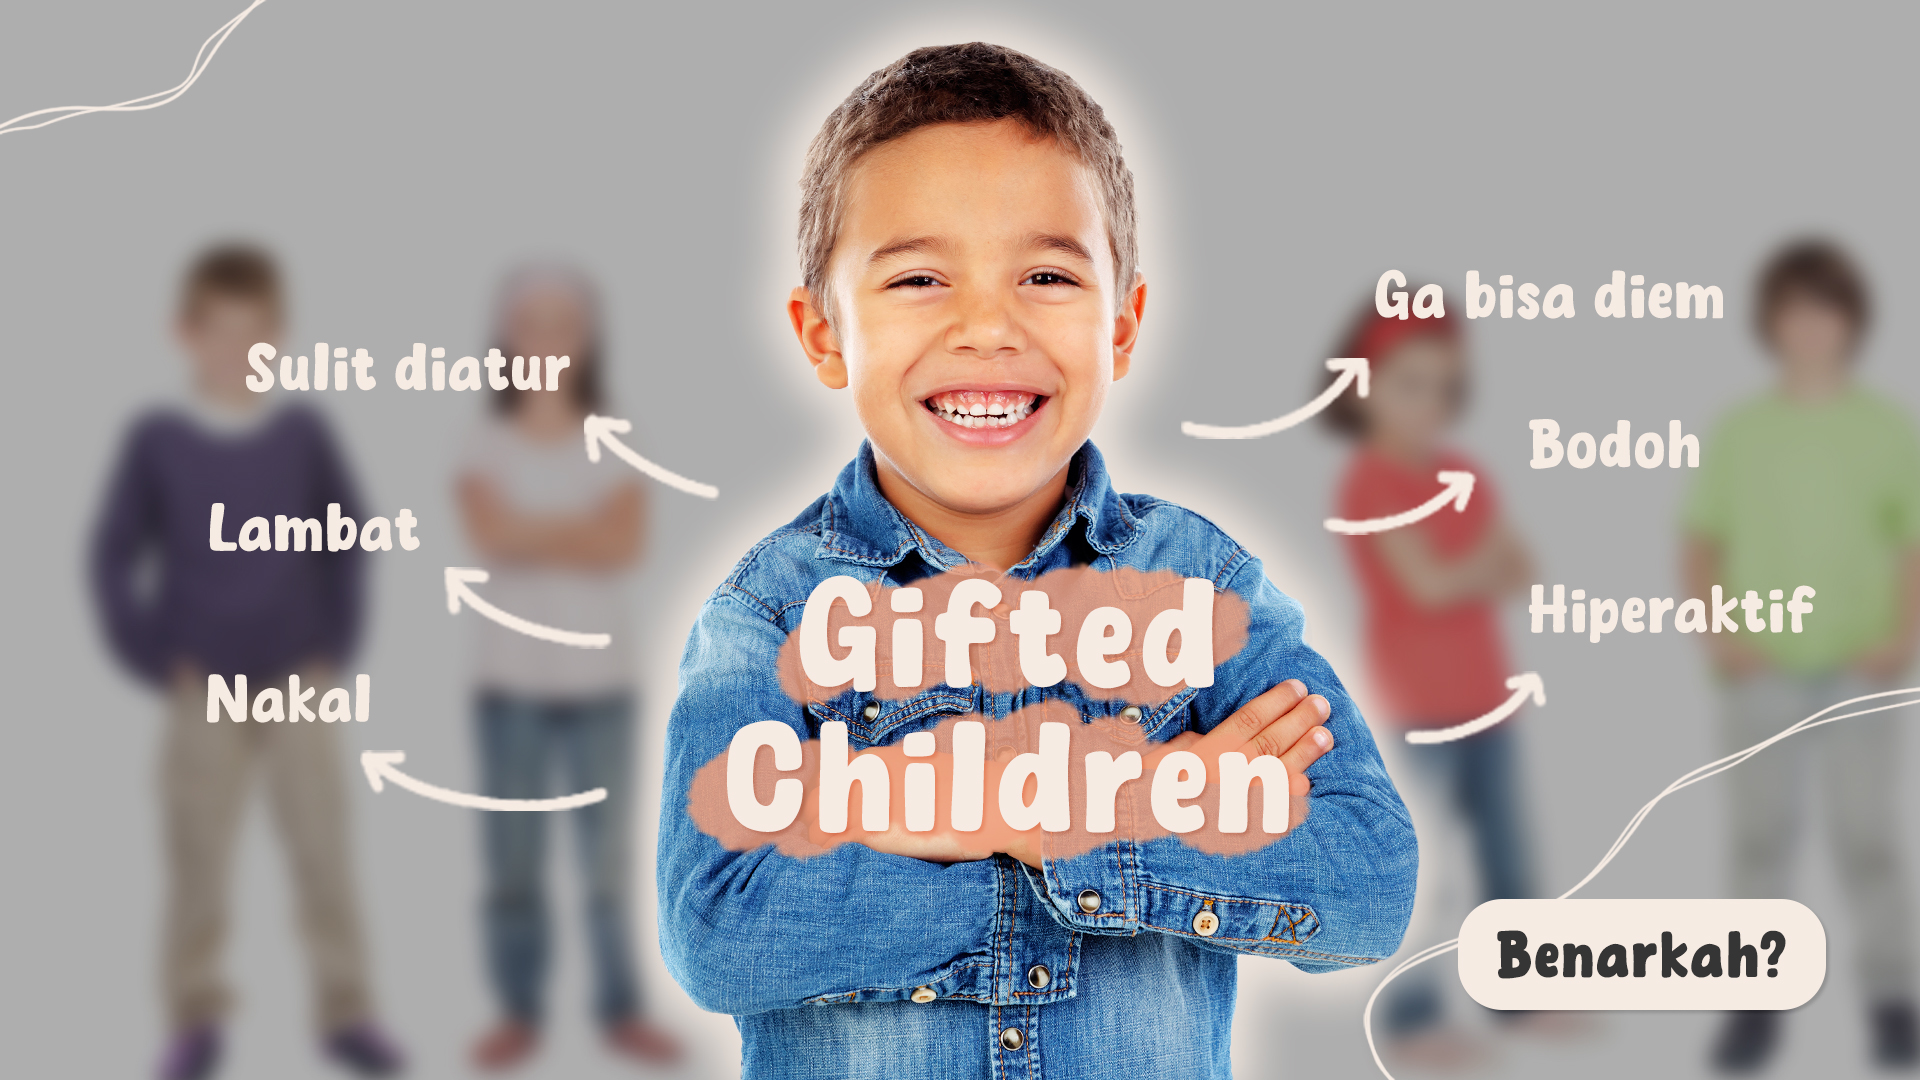 Gifted Children: Mengenali dan Memahami Kebutuhan si Anak Jenius